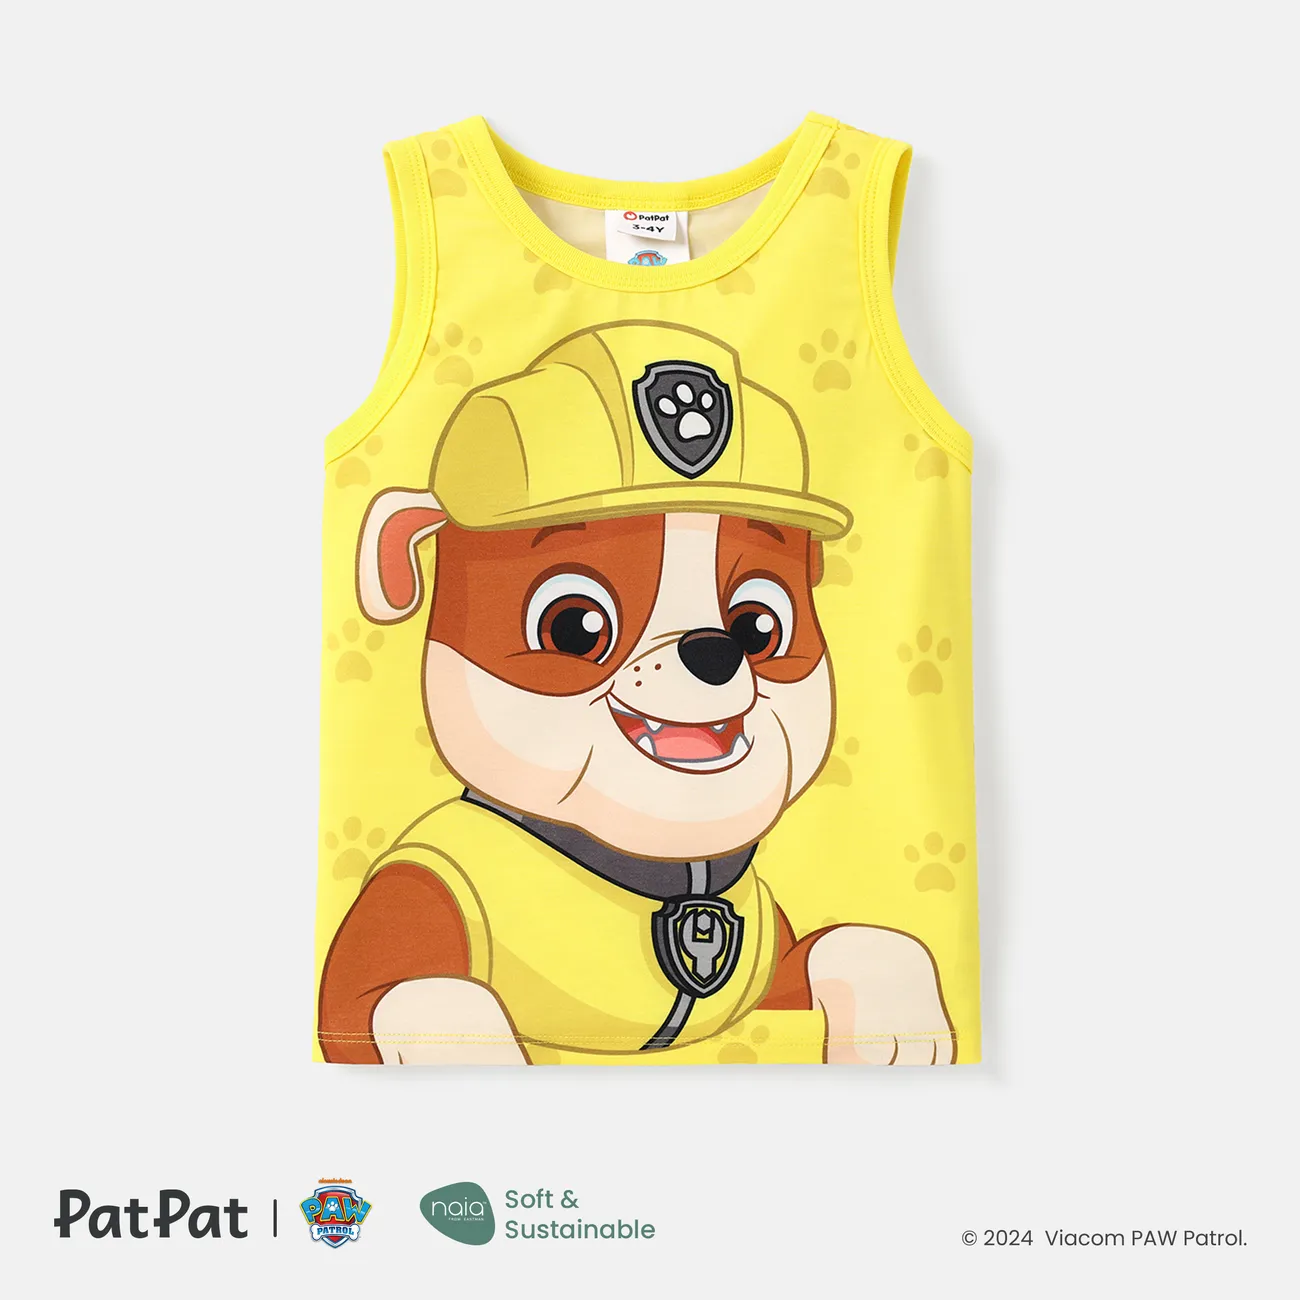 PAW Patrol Toddler Boy Character Print Naia™ Tank Top Yellow big image 1